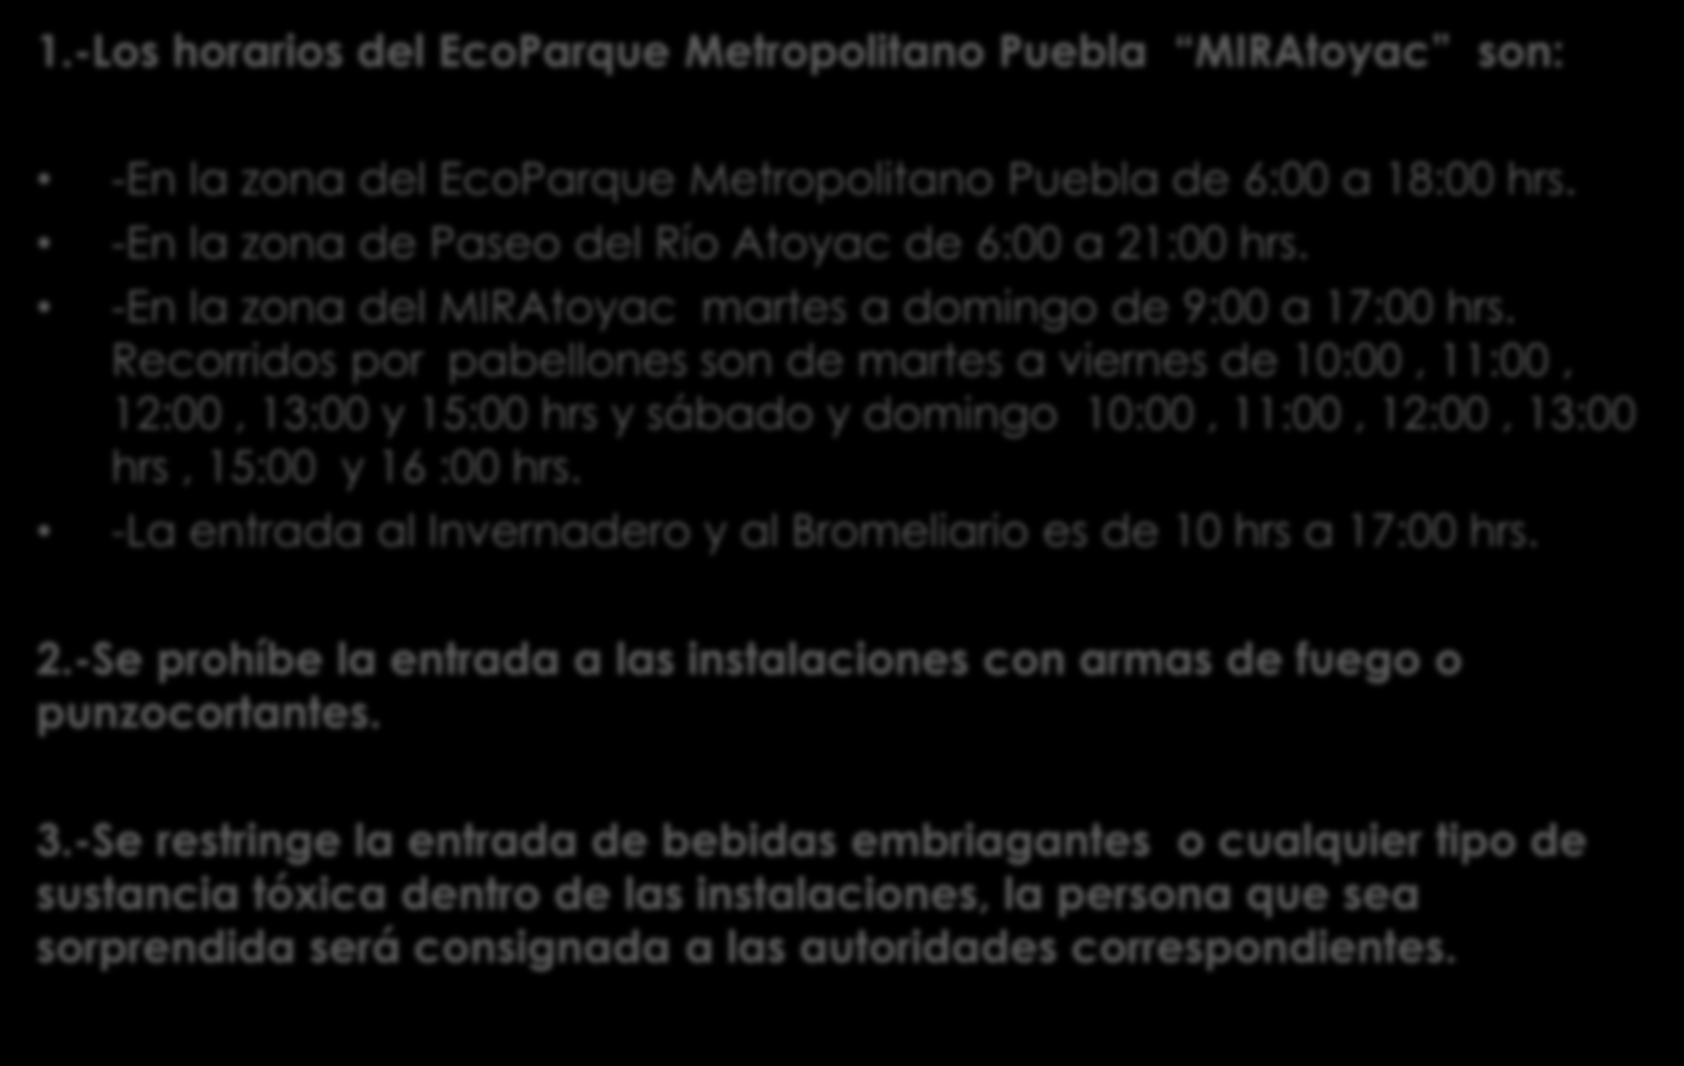 REGLAMENTO DEL ECOPARQUE METROPOLITANO PUEBLA MIRAtoyac 1.-Los horarios del EcoParque Metropolitano Puebla MIRAtoyac son: -En la zona del EcoParque Metropolitano Puebla de 6:00 a 18:00 hrs.